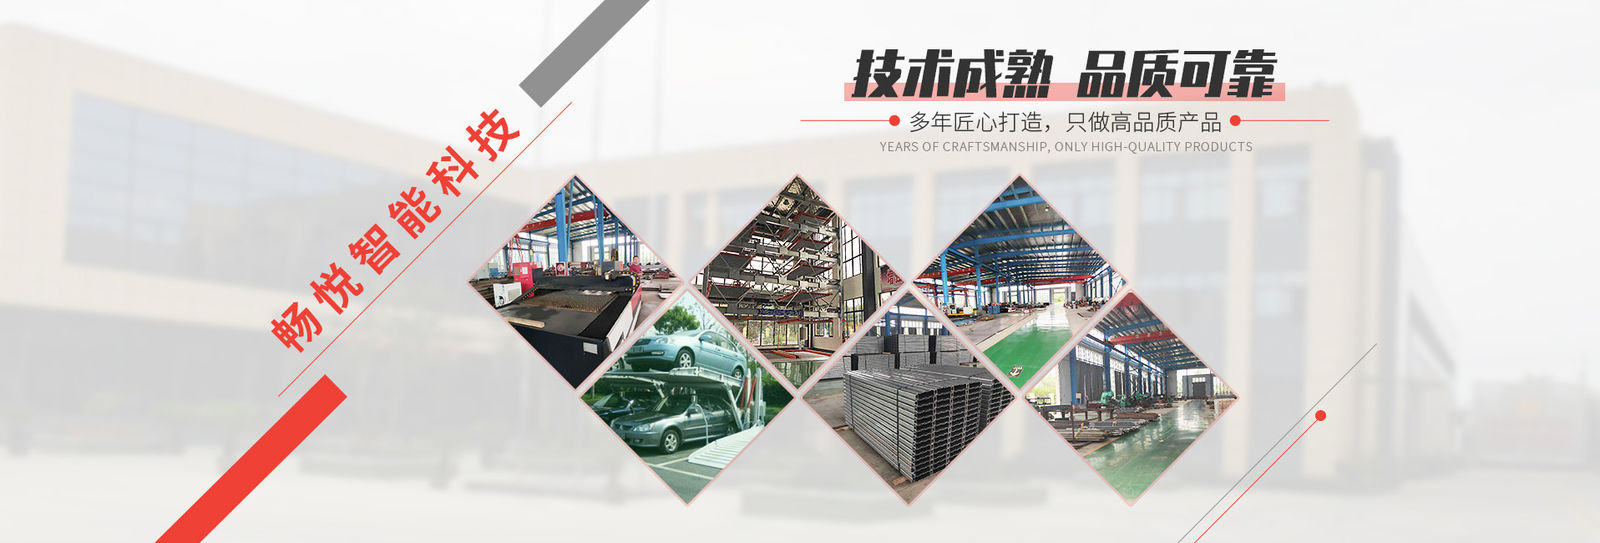 จีน Shanghai Changyue Automation Machinery Co., Ltd. รายละเอียด บริษัท